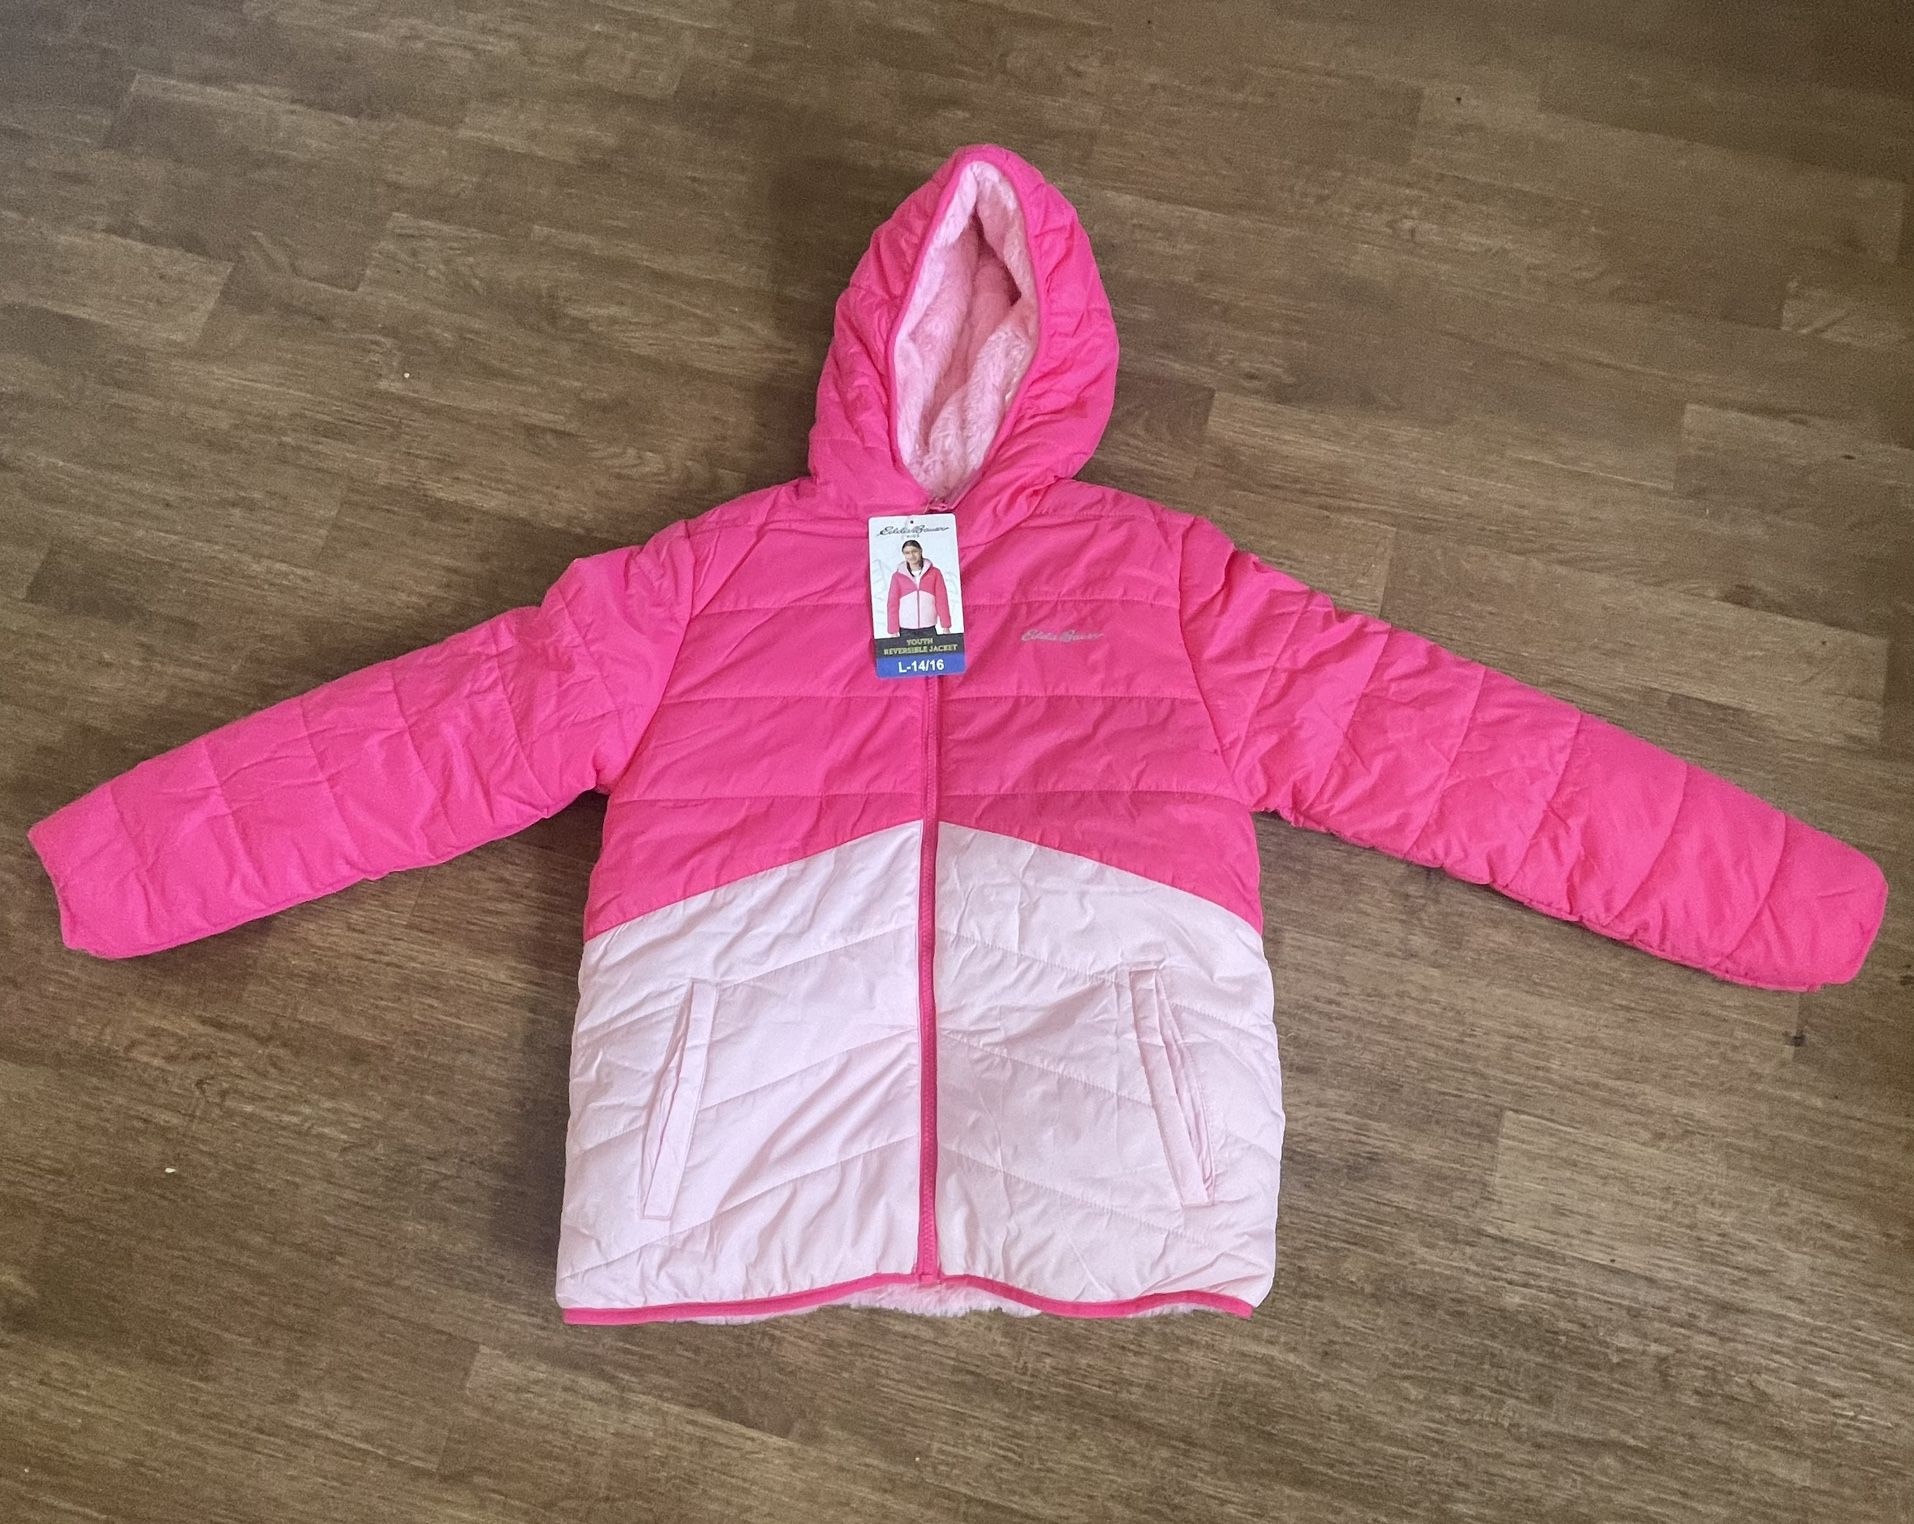 NEW Eddie Bauer Girls' Youth Reversible Plush Hoodie Jacket Pink Large 14 - 16